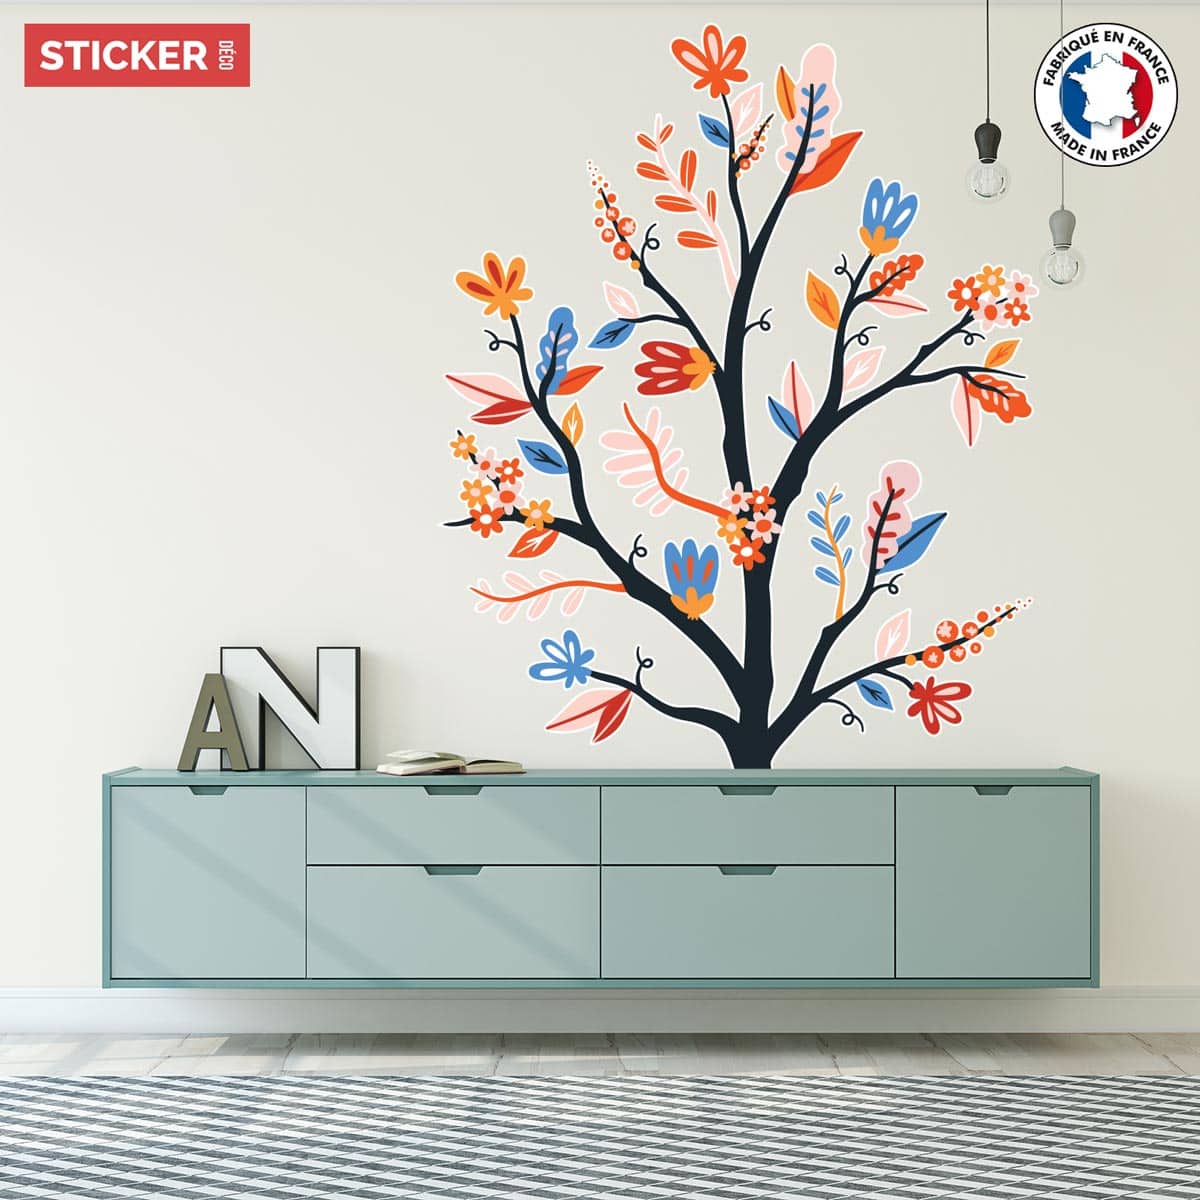 Stickers nature, fleurs, arbre & stickers muraux nature pas cher